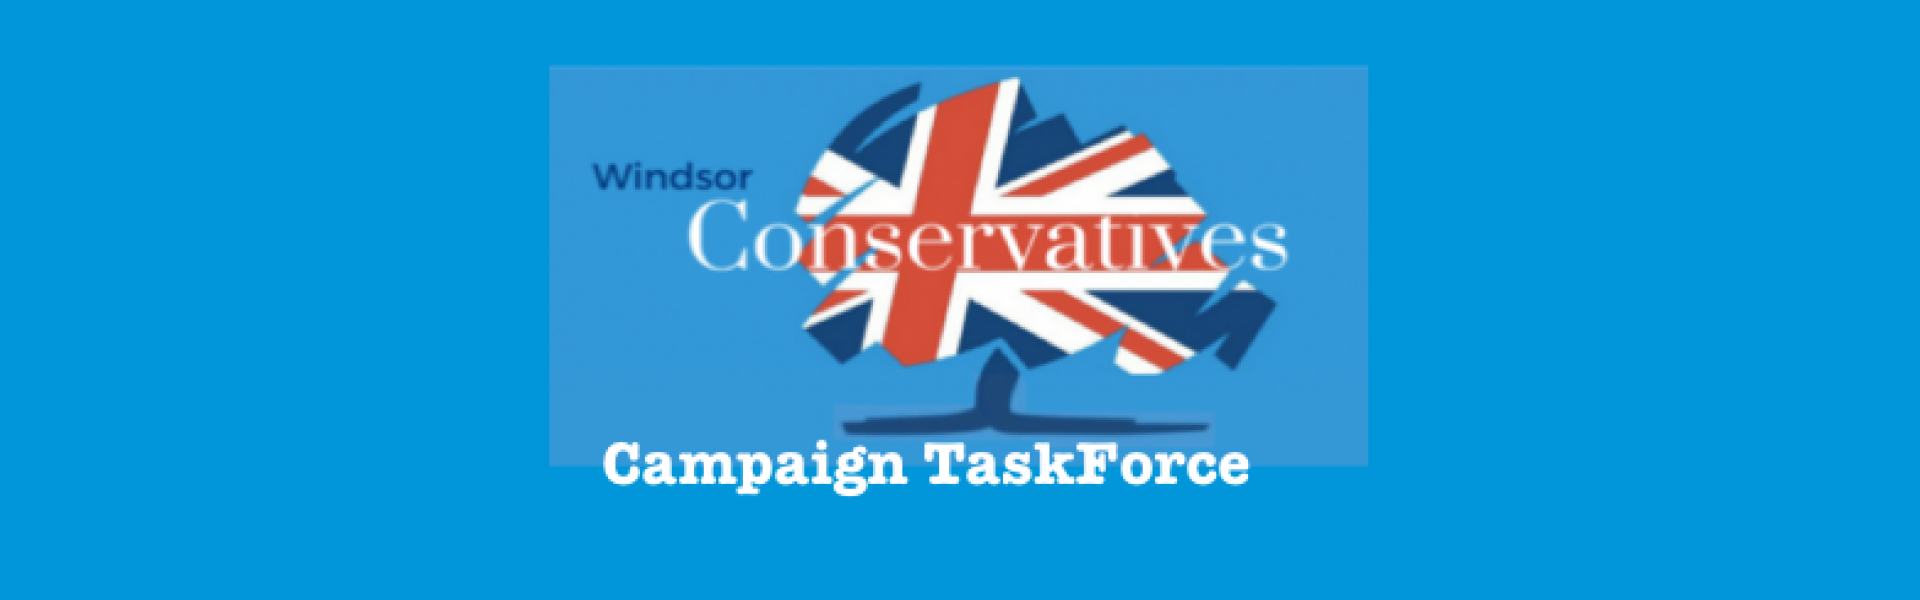 Campaign TaskForce